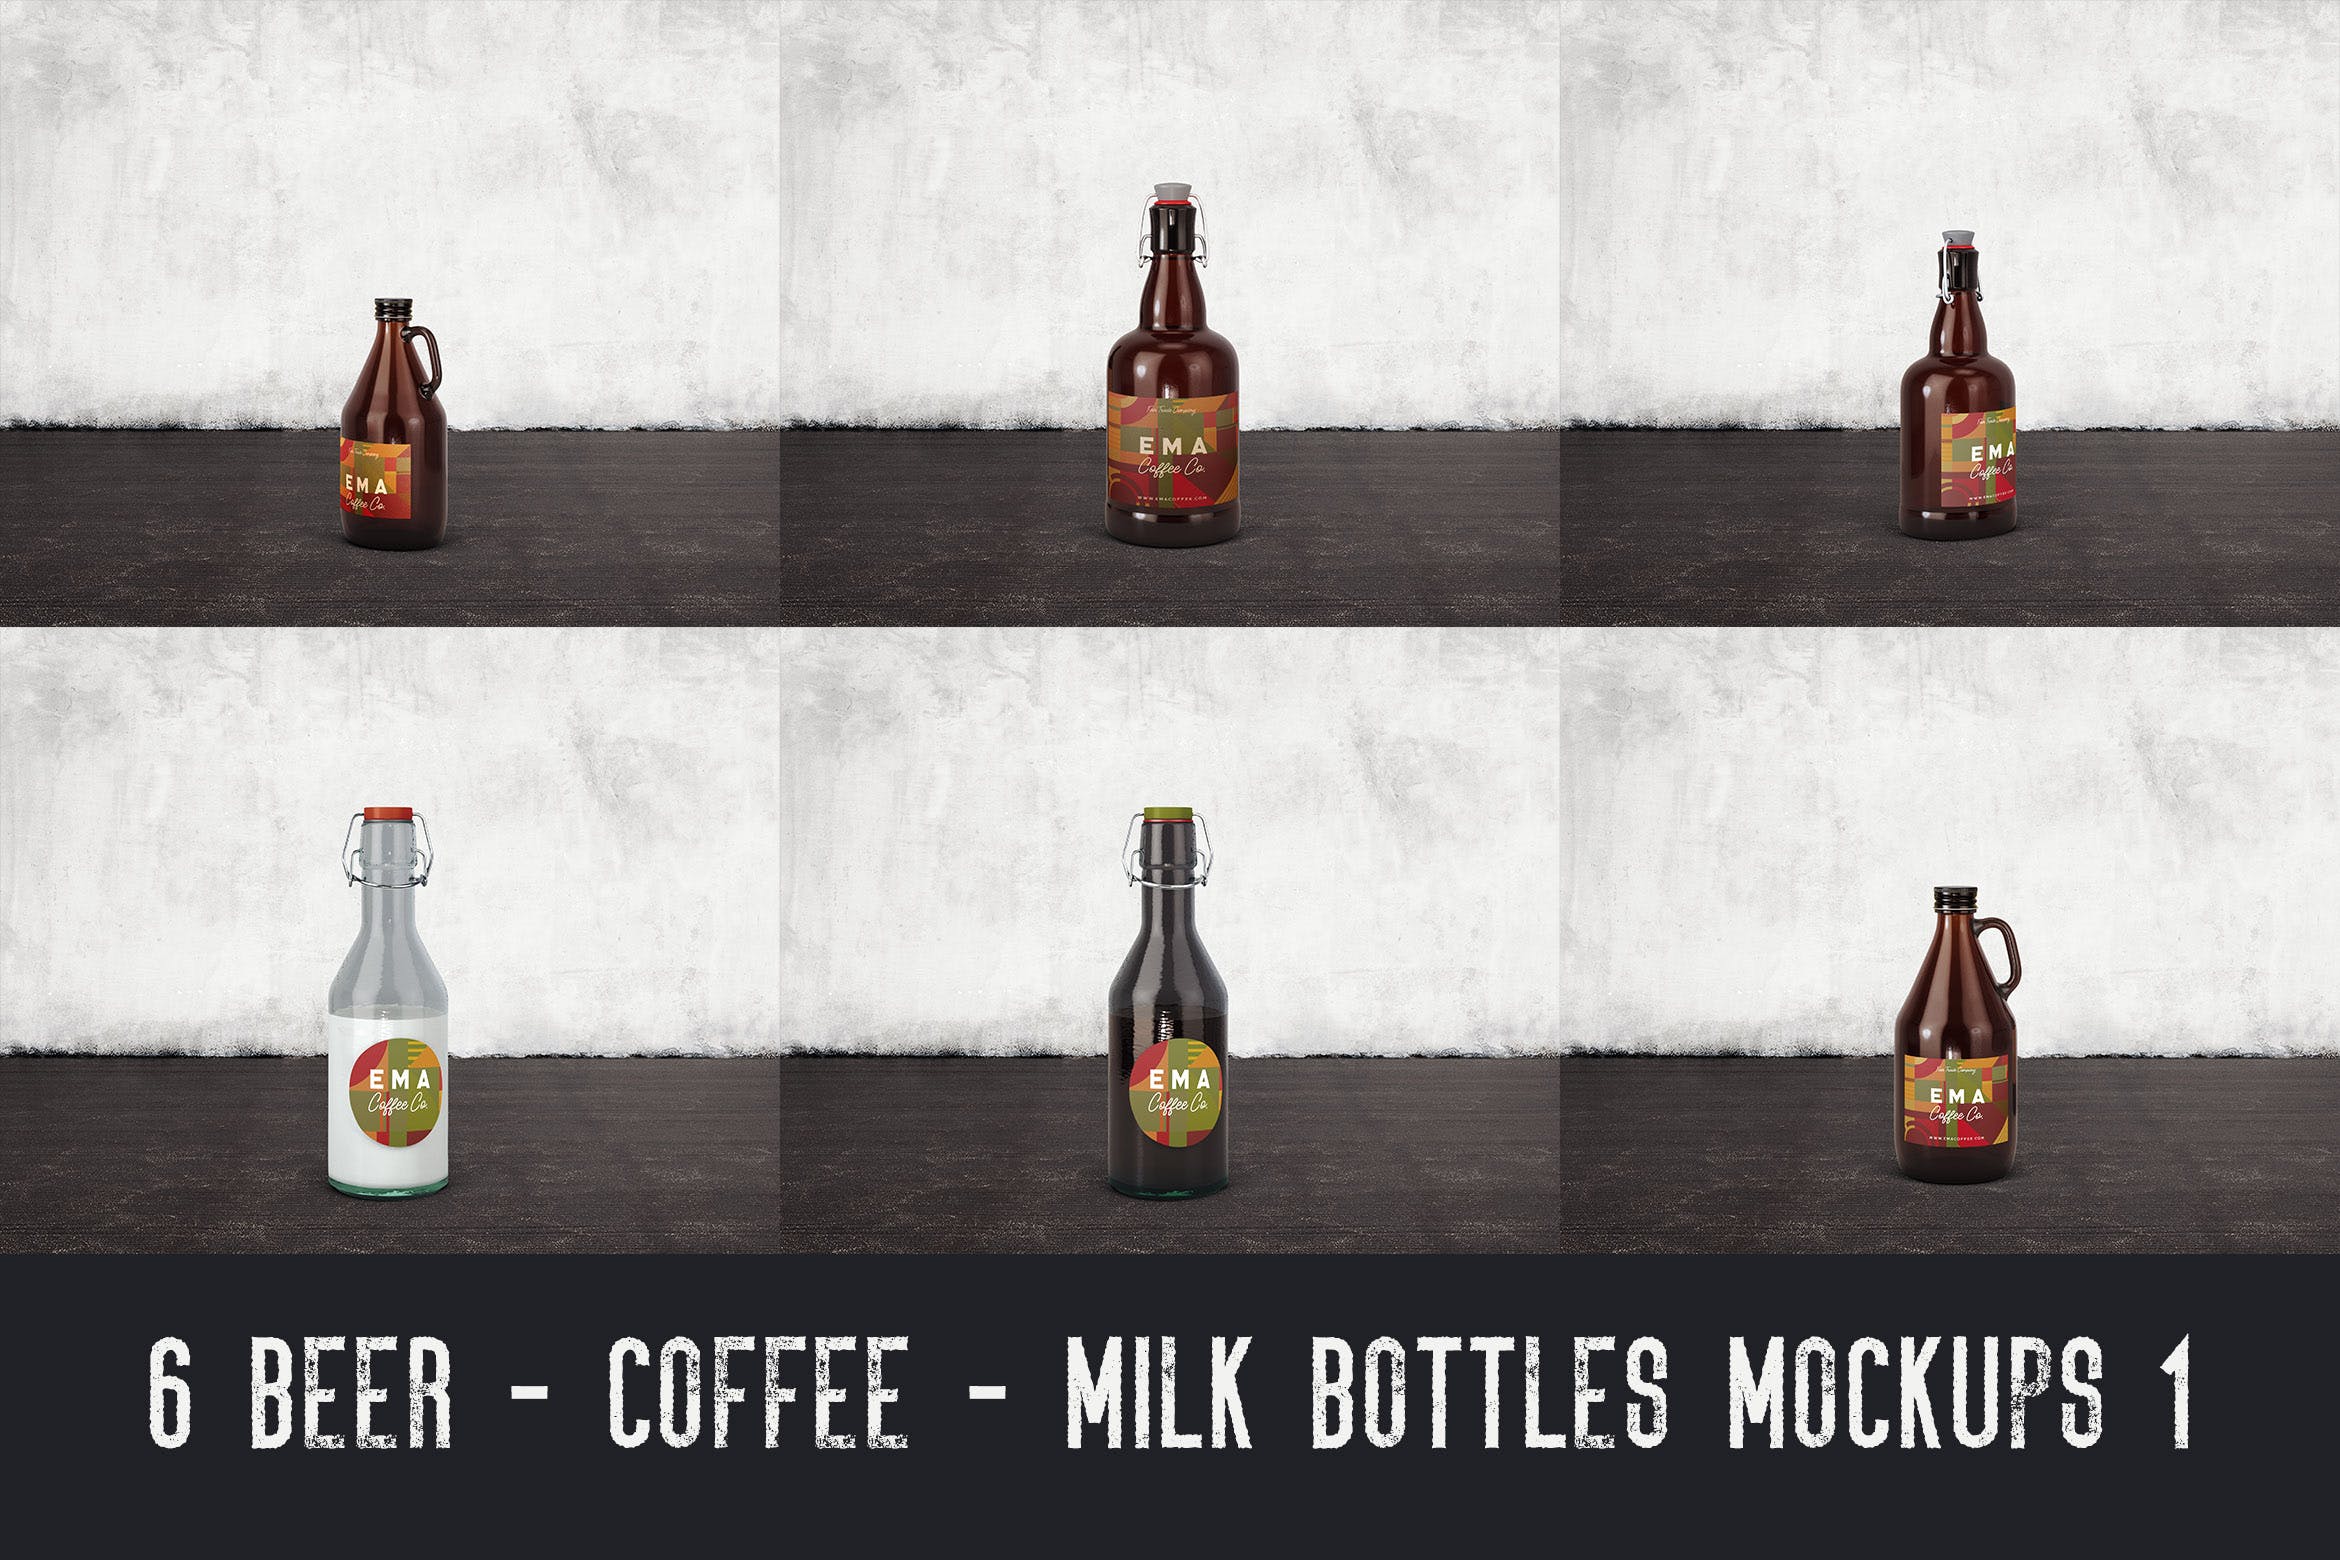 6个啤酒/咖啡/牛奶瓶外观设计素材中国精选v1 6 Beer Coffee Milk Bottles Mockups 1插图